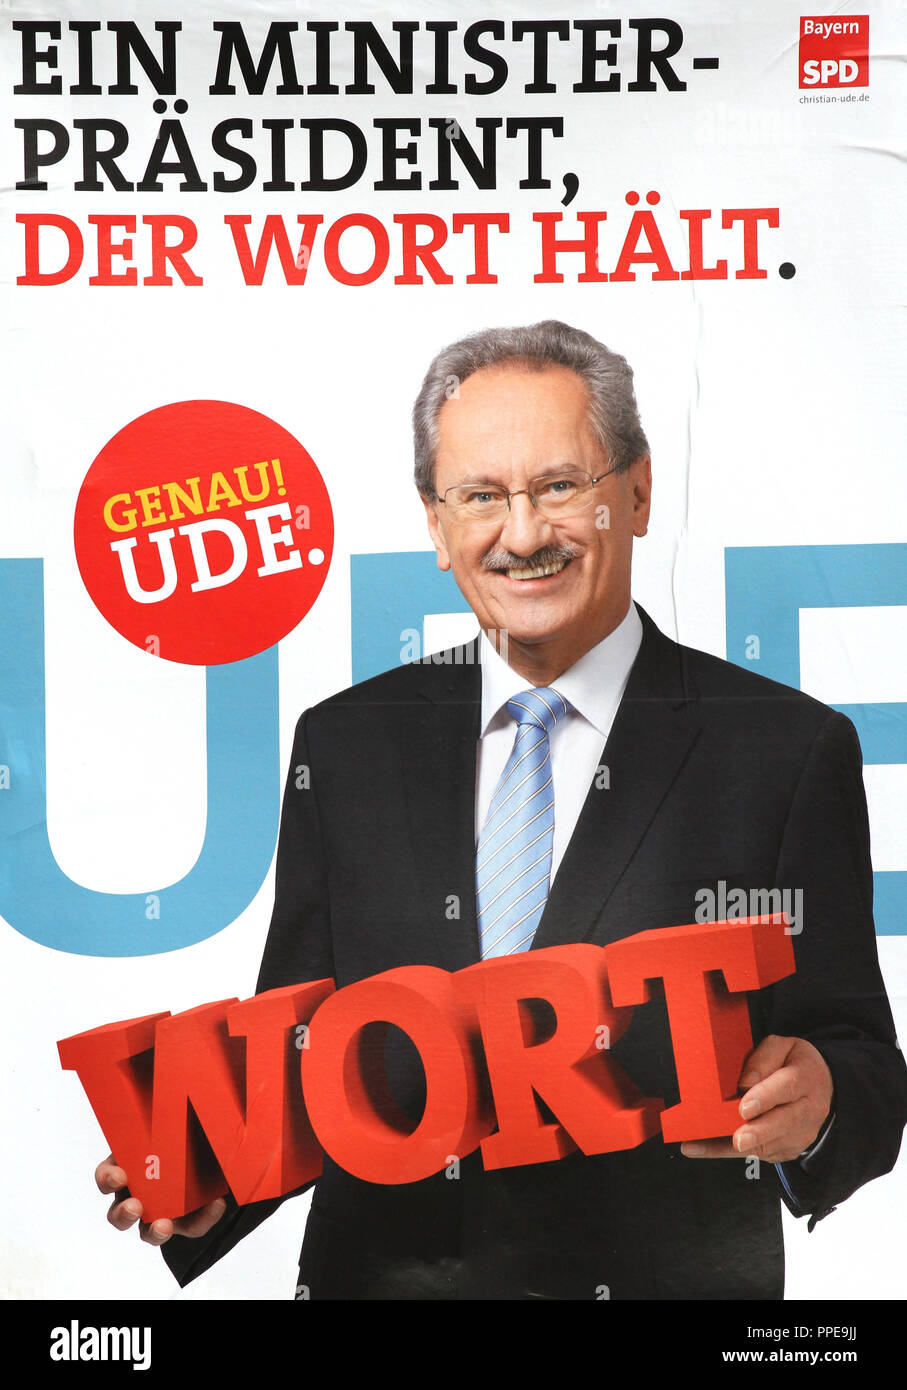 Landtagswahl 2013: Wahlplakate von Christian Ude, SPD-Kandidat für das Amt des Ministerpräsidenten zu laufen. Stockfoto